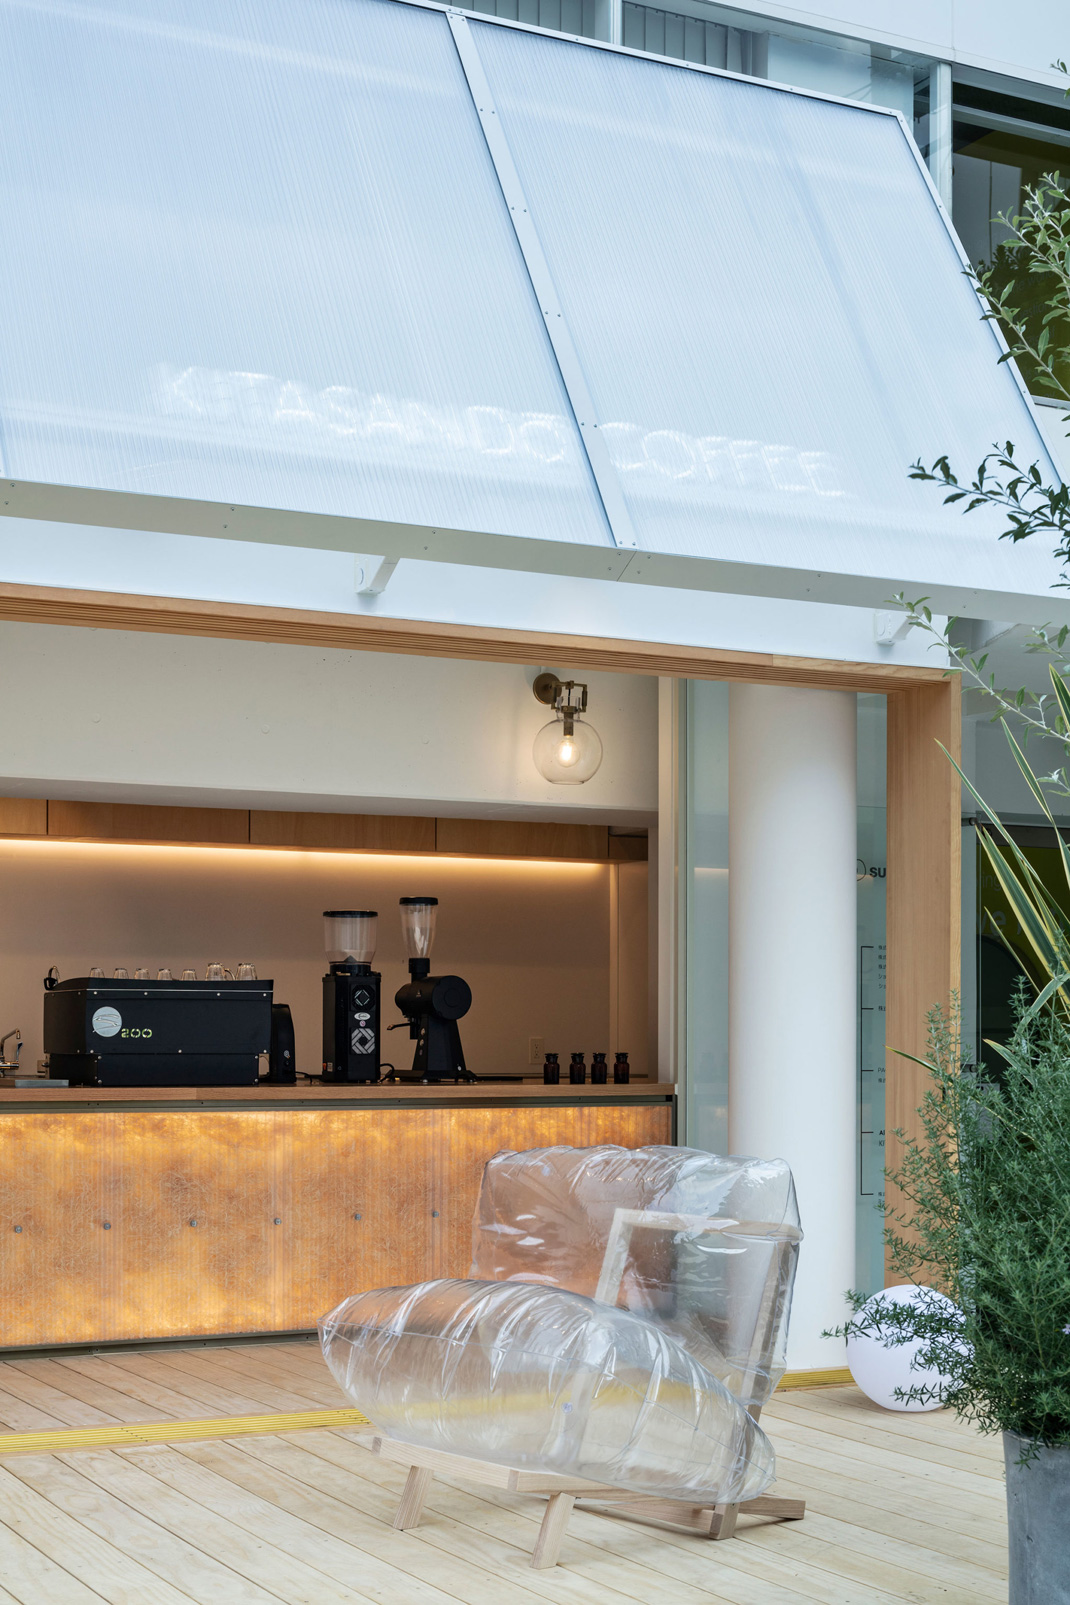 东京完全无现金咖啡台“KITASANDO COFFEE” 日本 咖啡馆 无现金 街铺 餐厅LOGO VI设计 空间设计 视觉餐饮